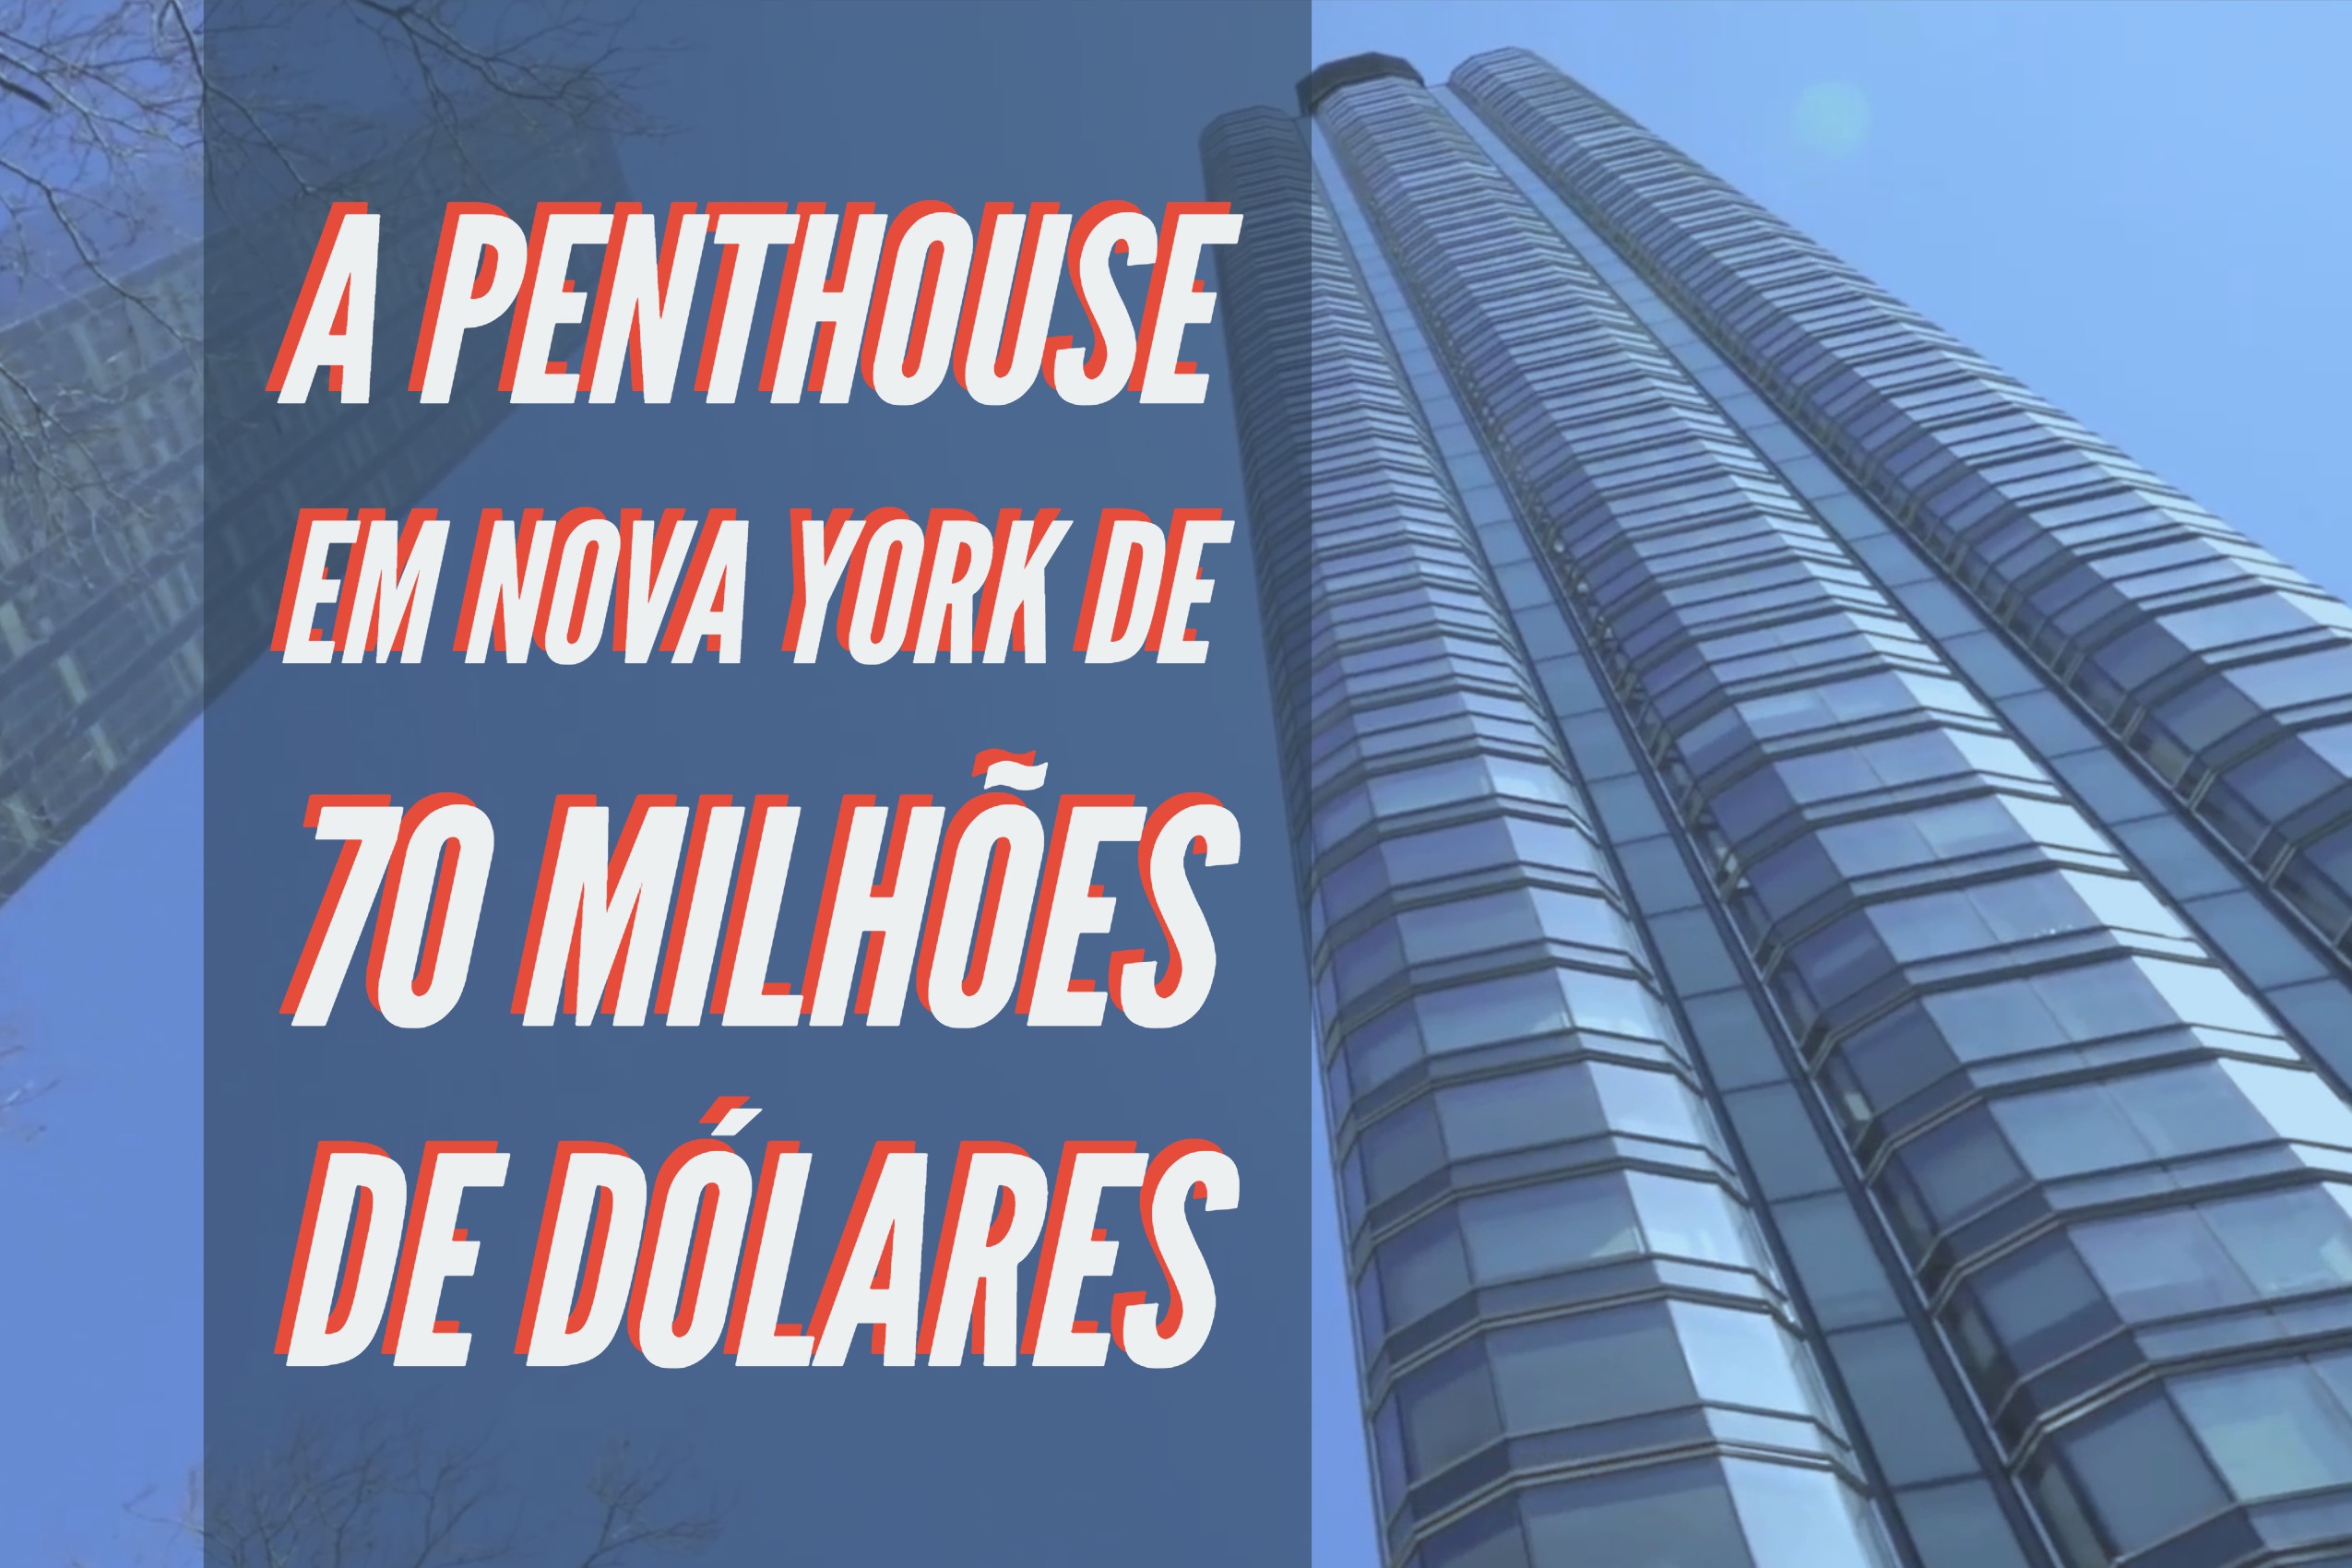 Quem pagaria US$ 70 milhões por essa Penthouse em Nova York 